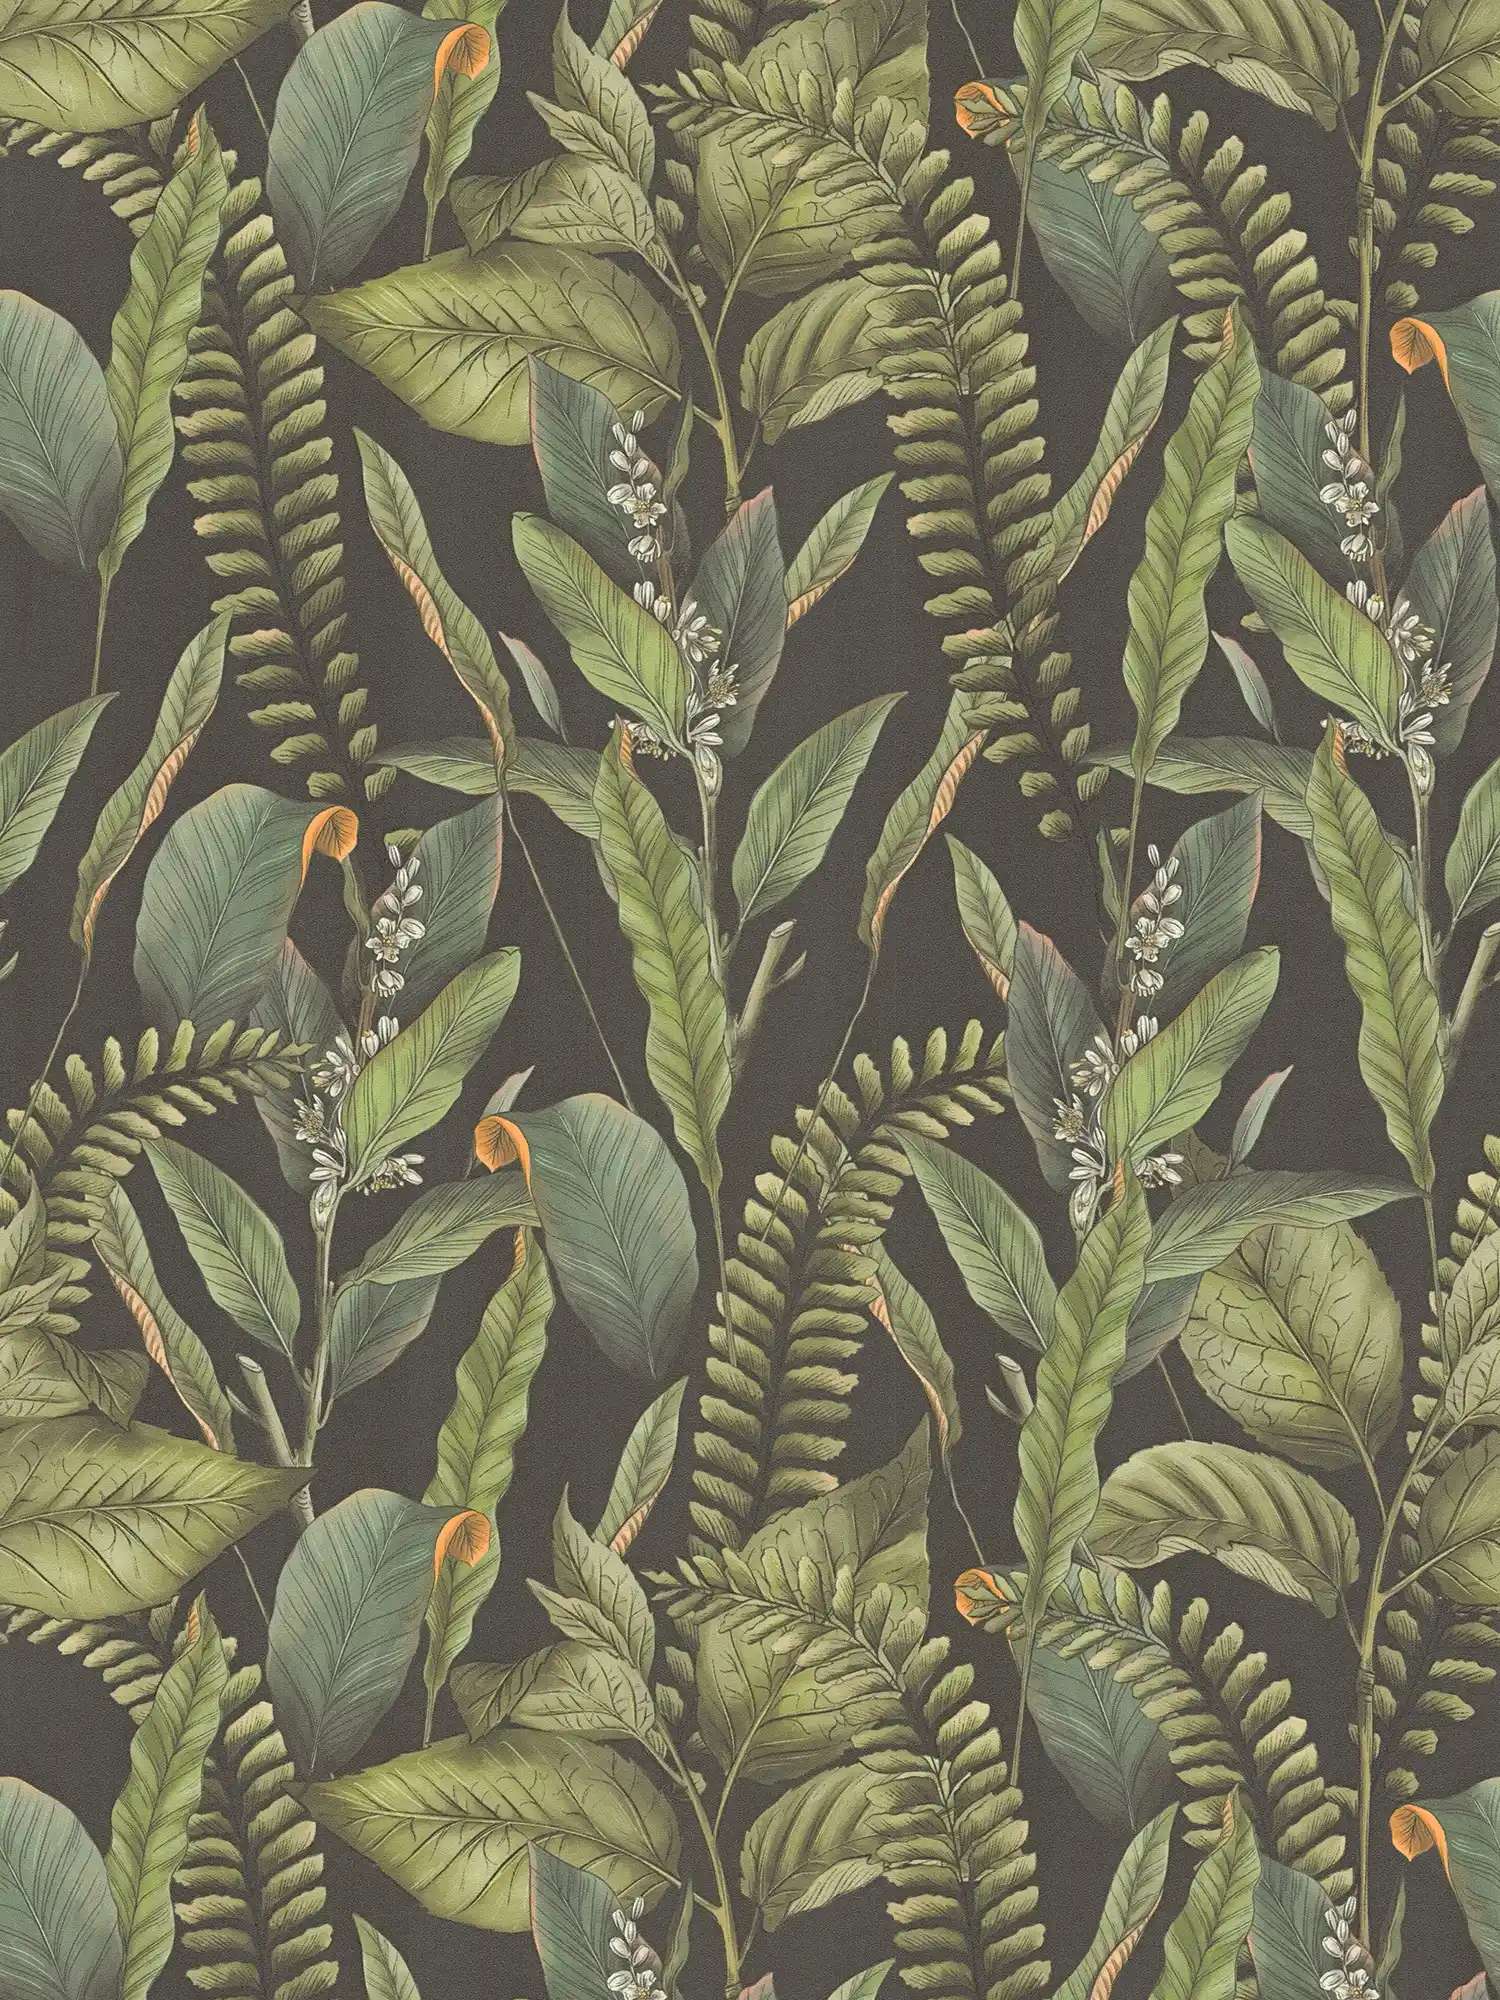 papier peint en papier jungle style floral avec feuilles & fleurs structuré mat - noir, vert, orange
